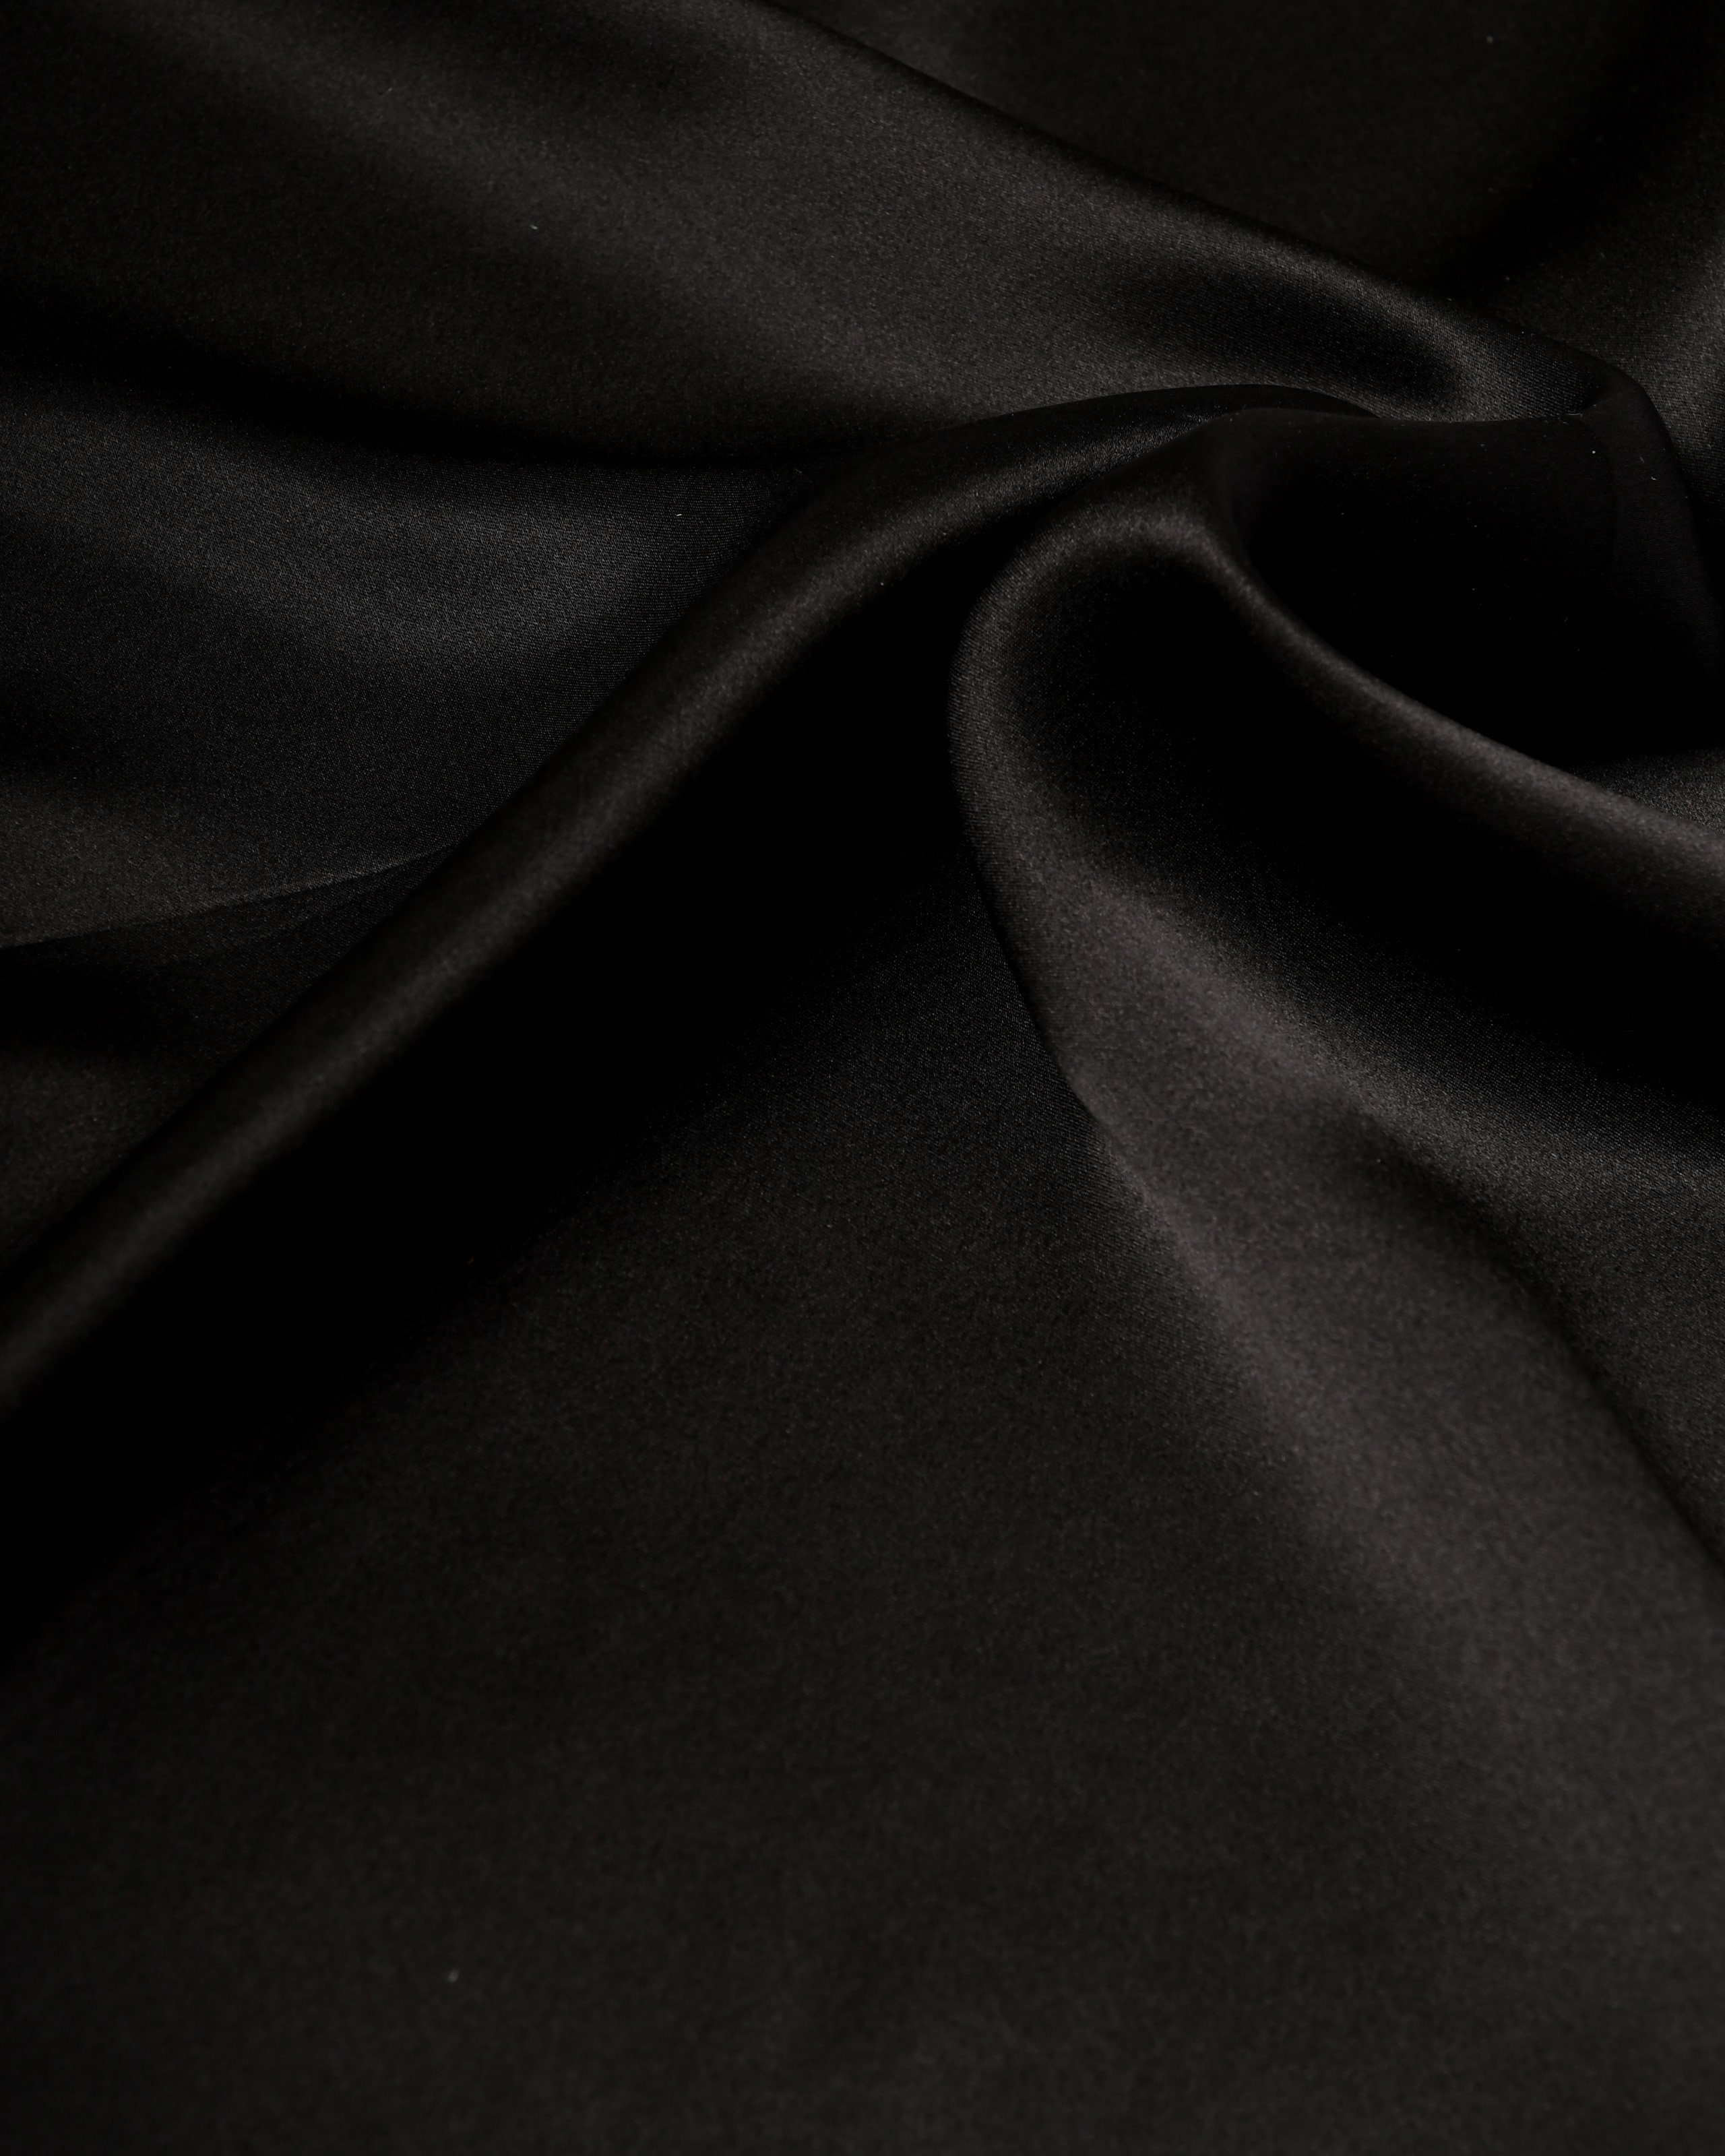 MayTree (Stück, Seidentuch einfarbig 1-St), 100% Nickituch, 53x53cm schwarz quadratisch Bandana-Schal, Seide